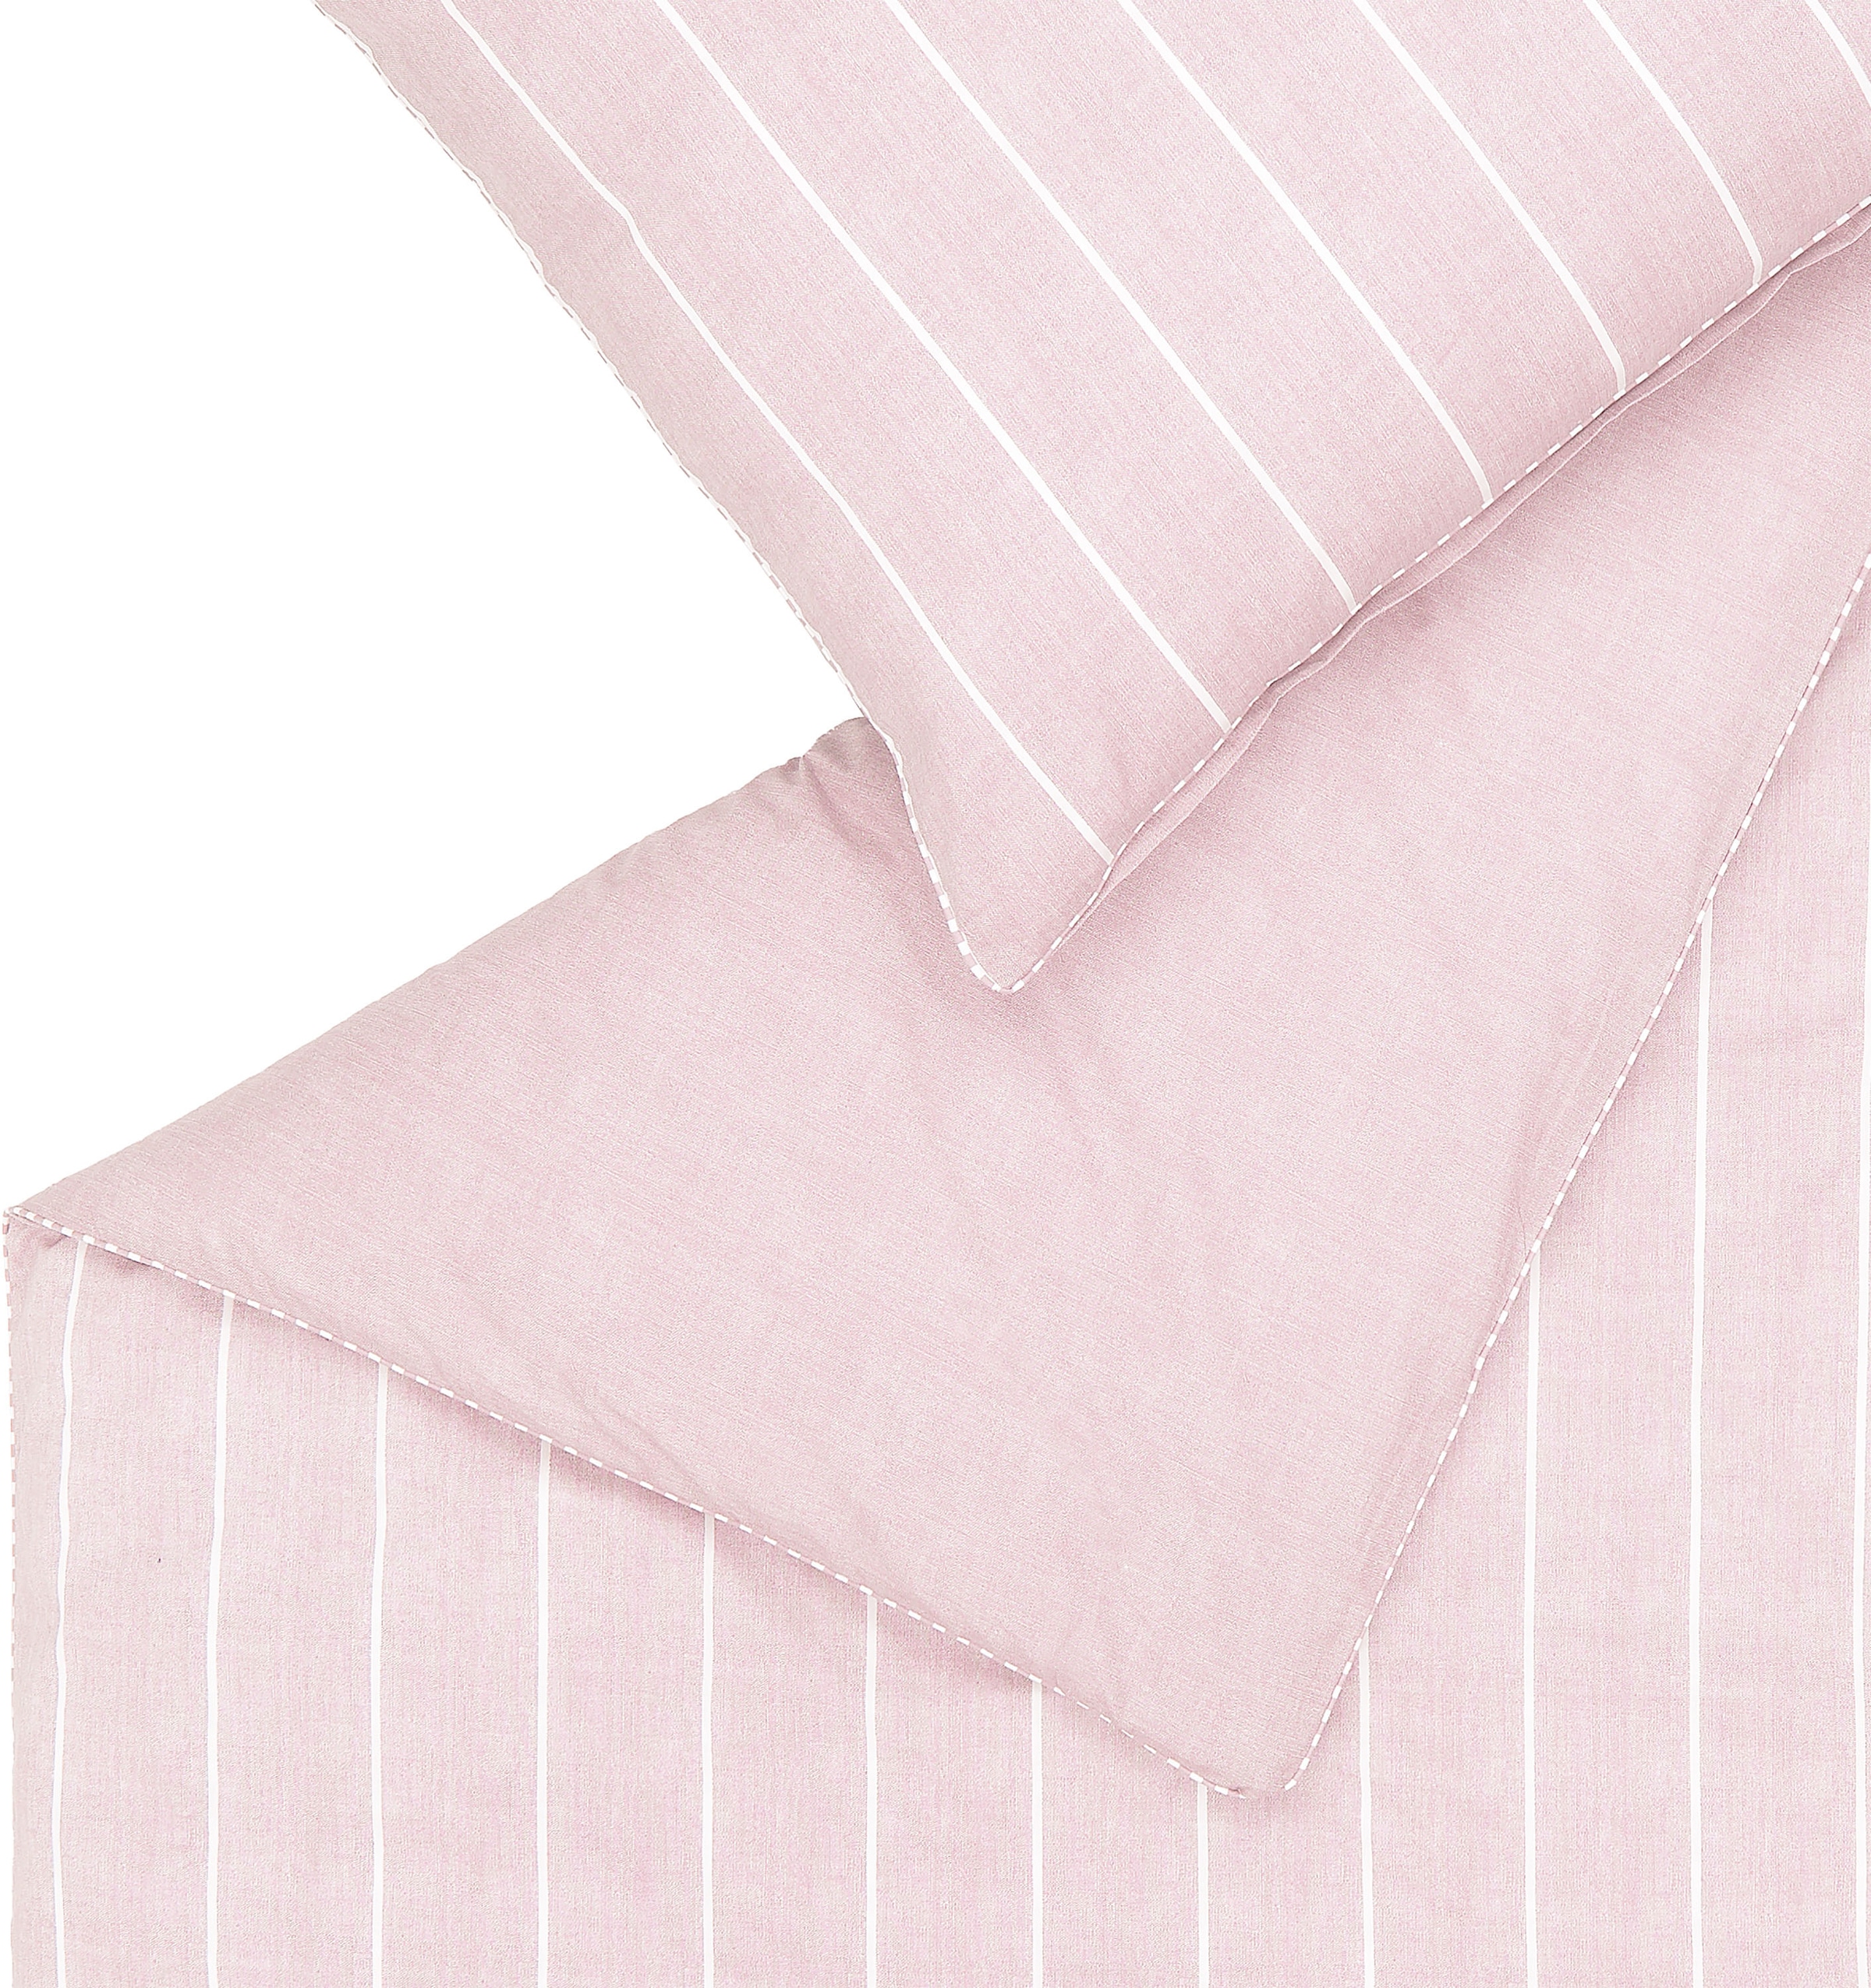 Esprit Bettwäsche »Harp Stripe«, (2 tlg.), in Renforce Qualität, 100% Baumwolle (BCI Better Cotton Initiative), Bett- und Kopfkissenbezug mit Reißverschluss, Winter- und Sommerbettwäsche